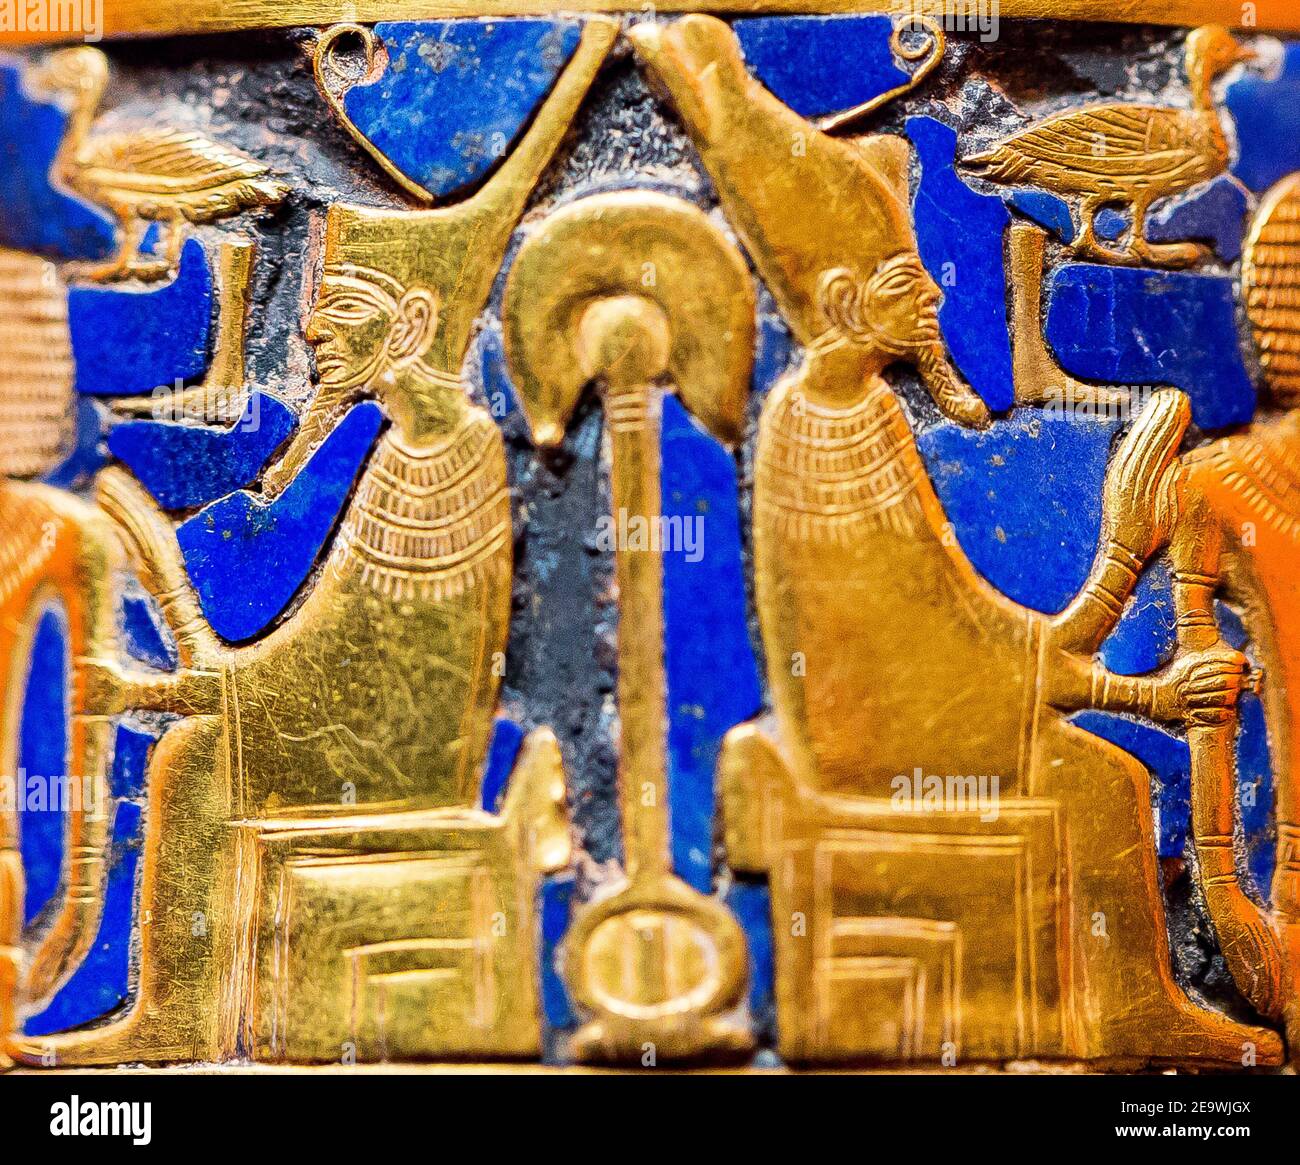 Ägypten, Kairo, Ägyptisches Museum, Gold Armband im Grab der Königin Ahhotep gefunden, die Mutter von Ahmosis, Dra Abu el Naga, Luxor. Krönungsritual. Stockfoto